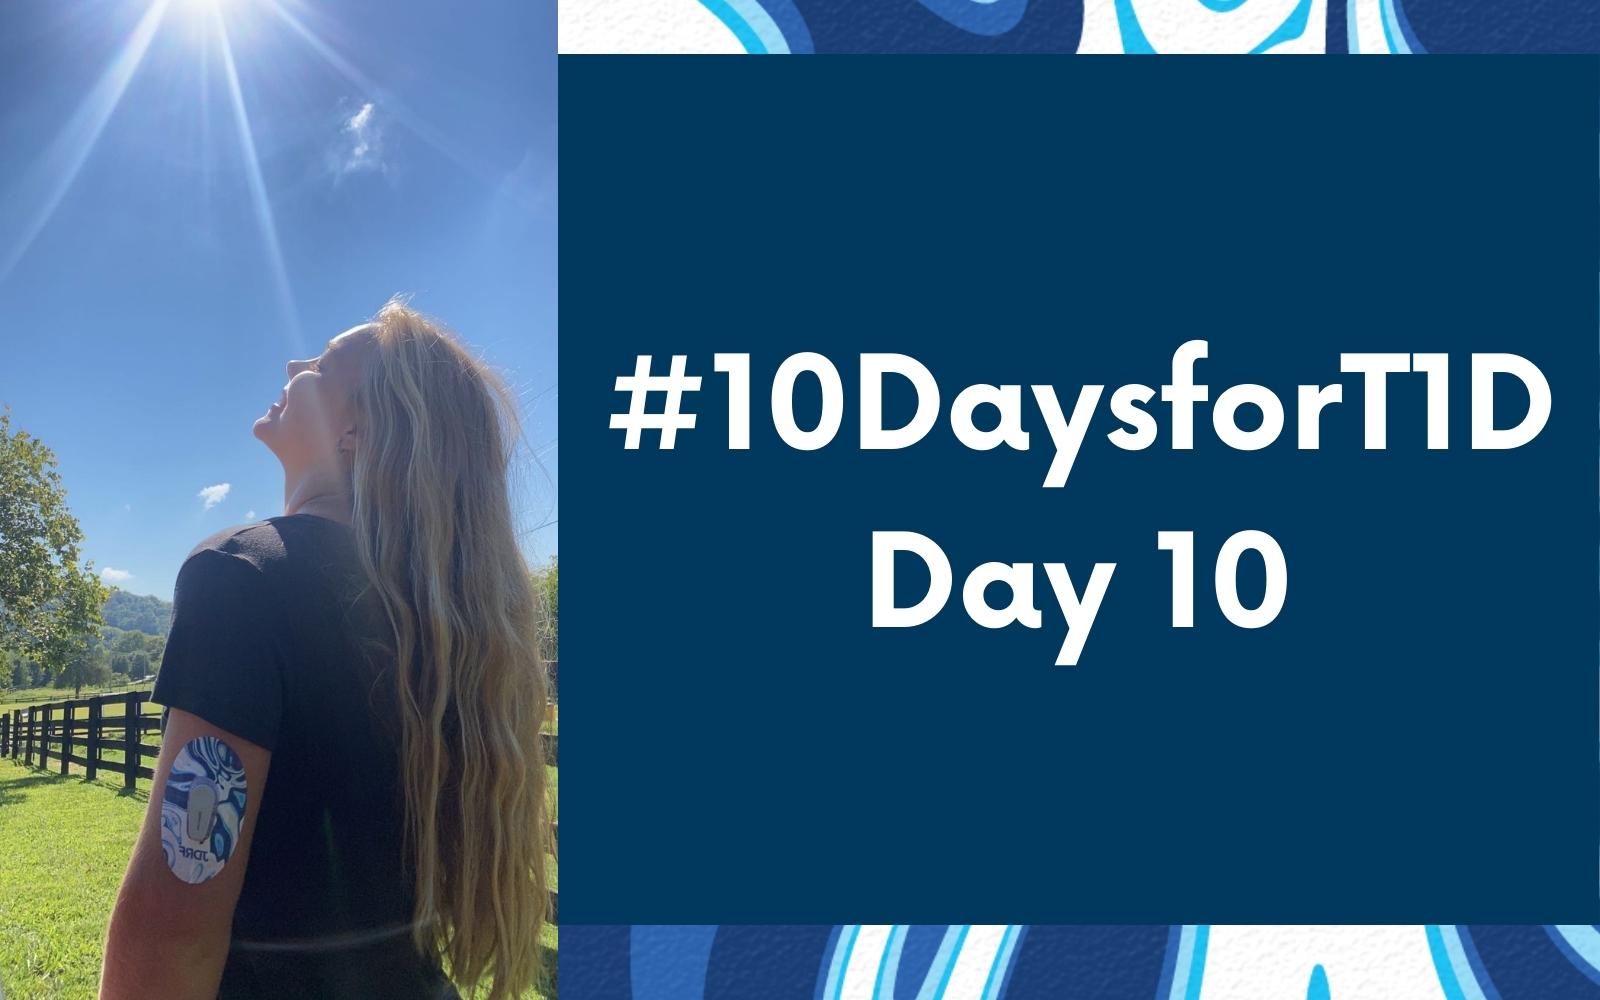 #10DaysforT1D Challenge Day 10